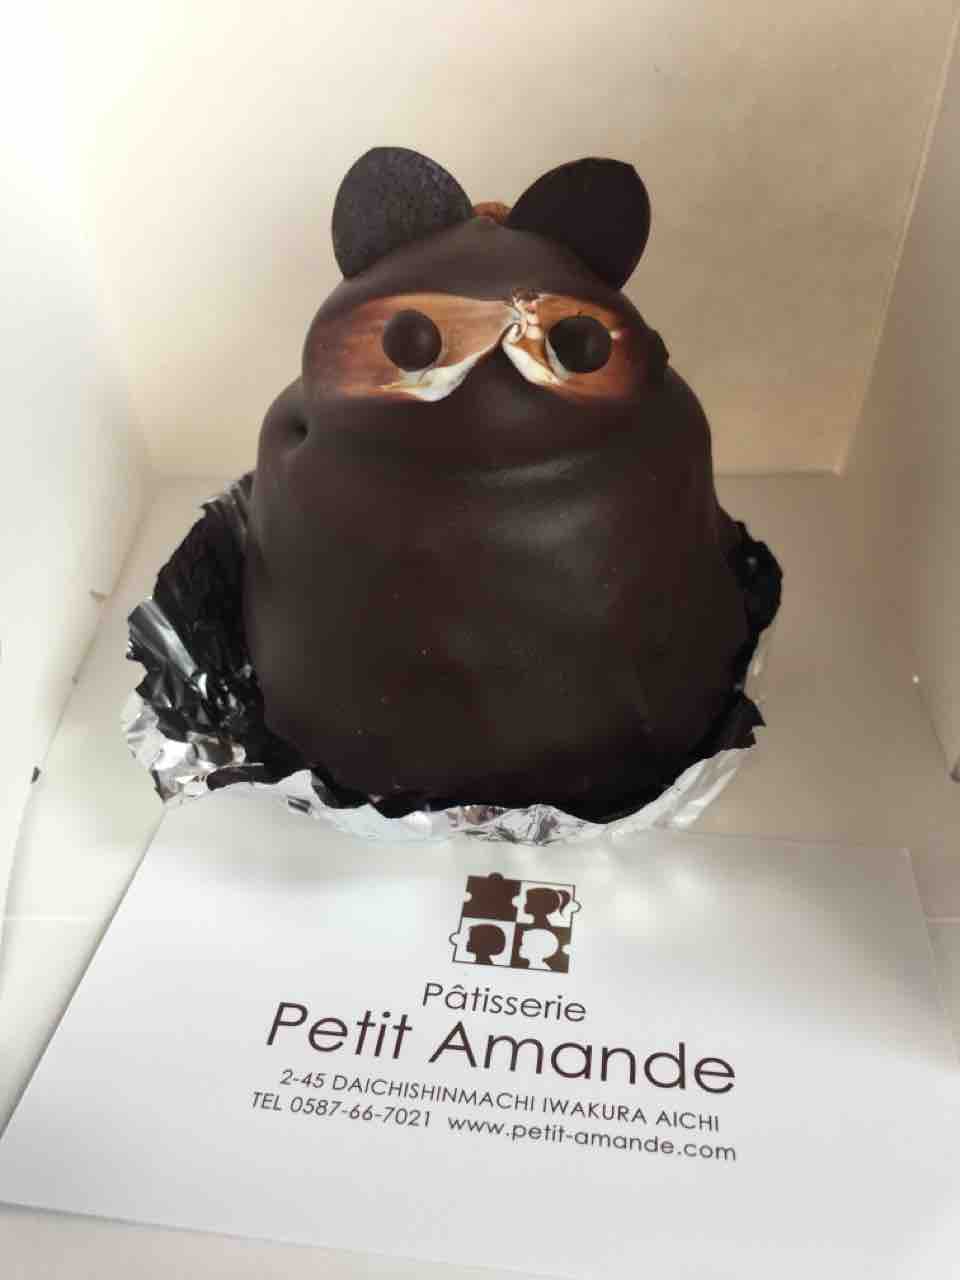 たぬきケーキを求めて Patisserie Petit Amande いつもどこかで